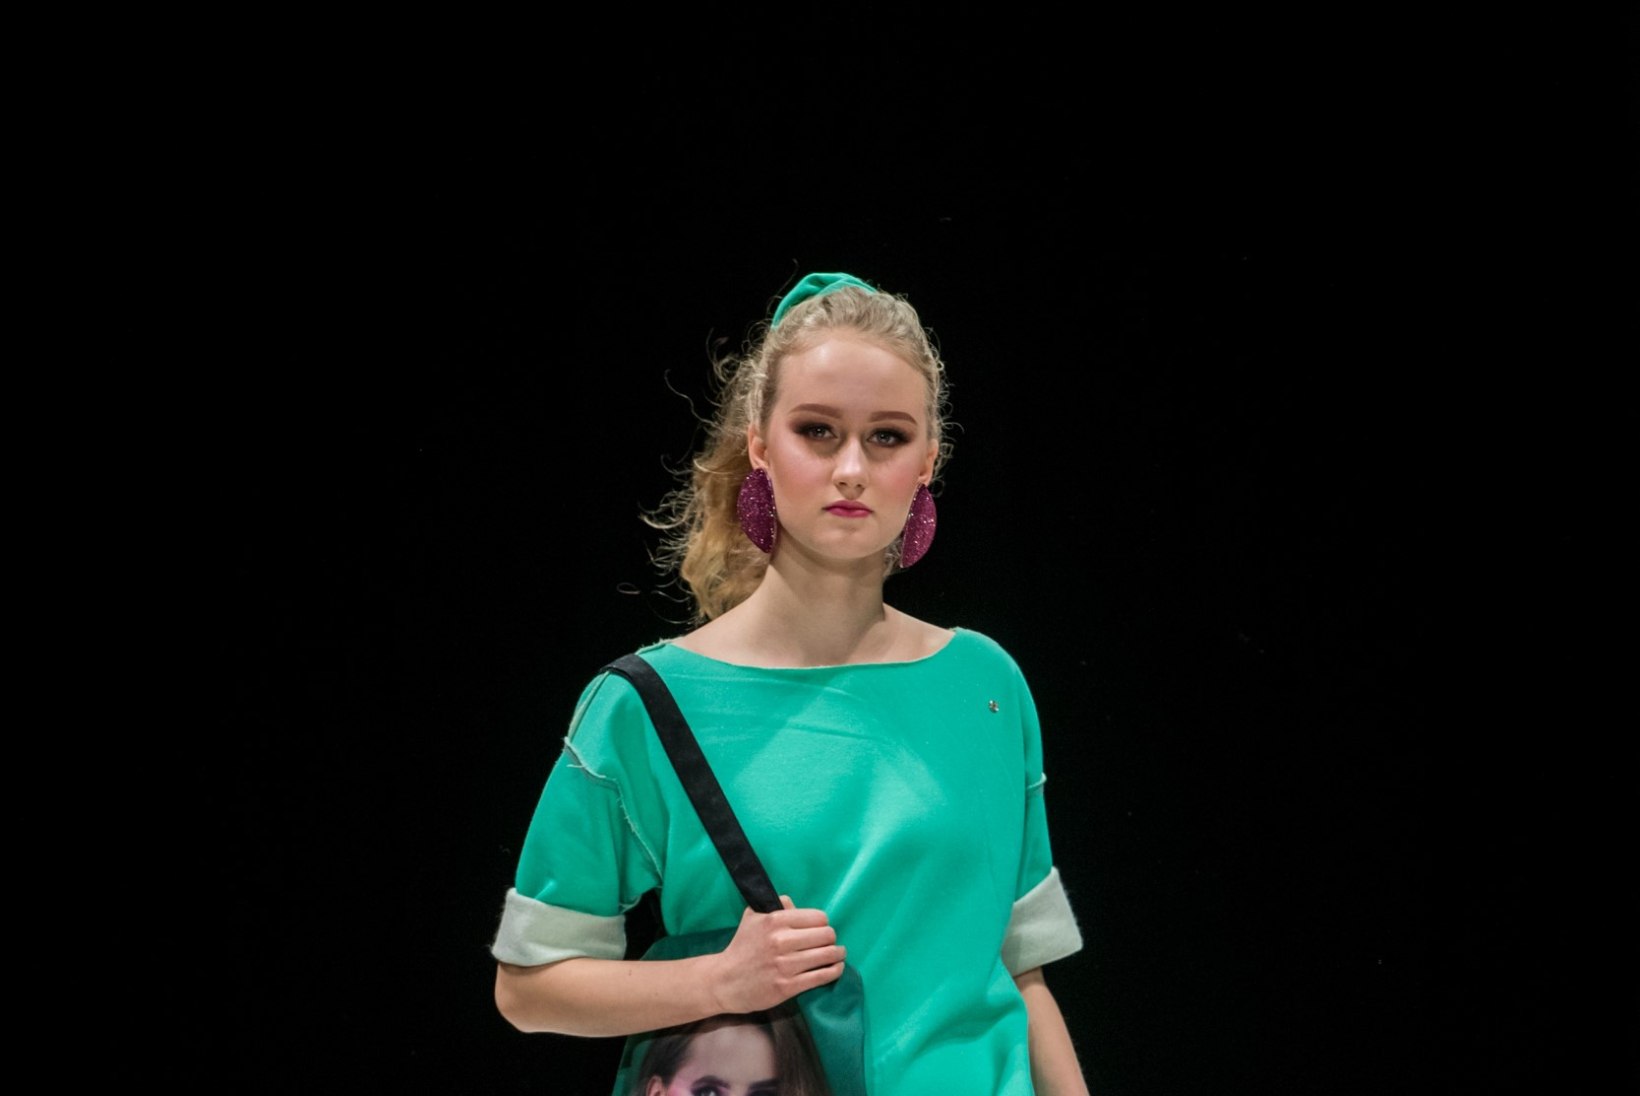 TFW 2019 | Marilin Sikkal armastab sportlikke rõivaesemeid ja efektseid 80ndate stiilis soenguid